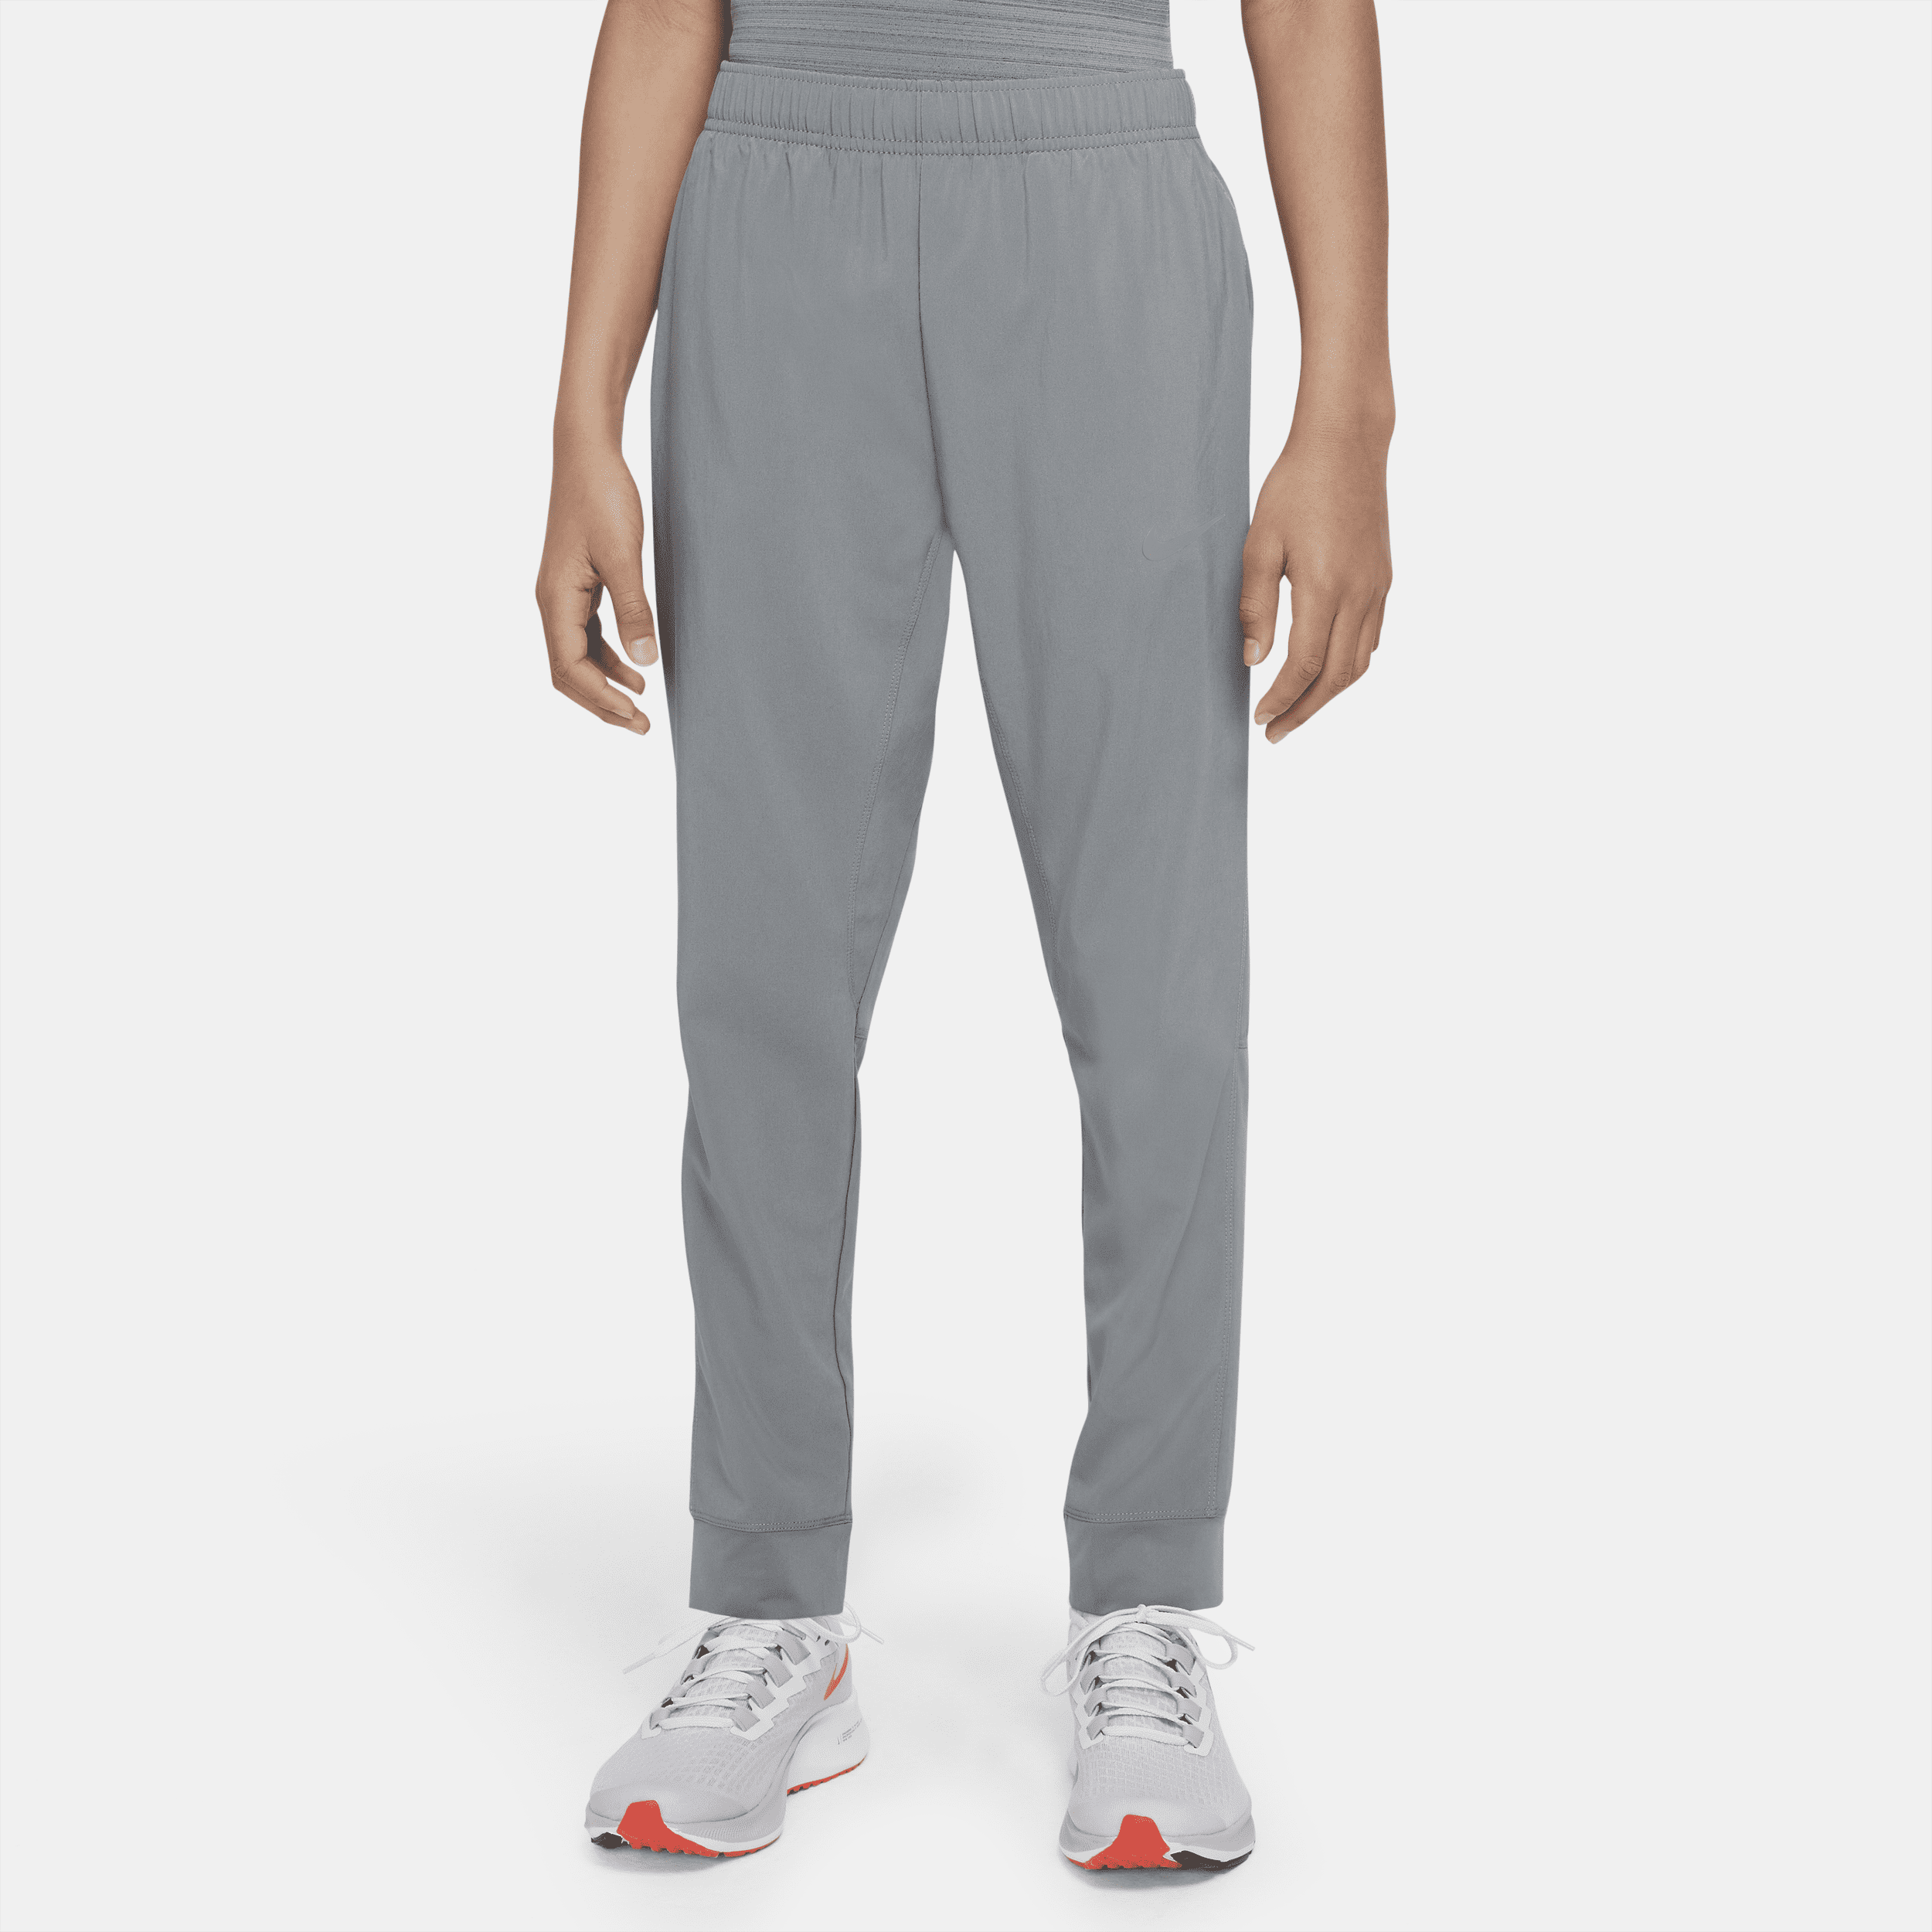 Nike Dri-FIT-træningsbukser i vævet materiale til større børn (drenge) - grå